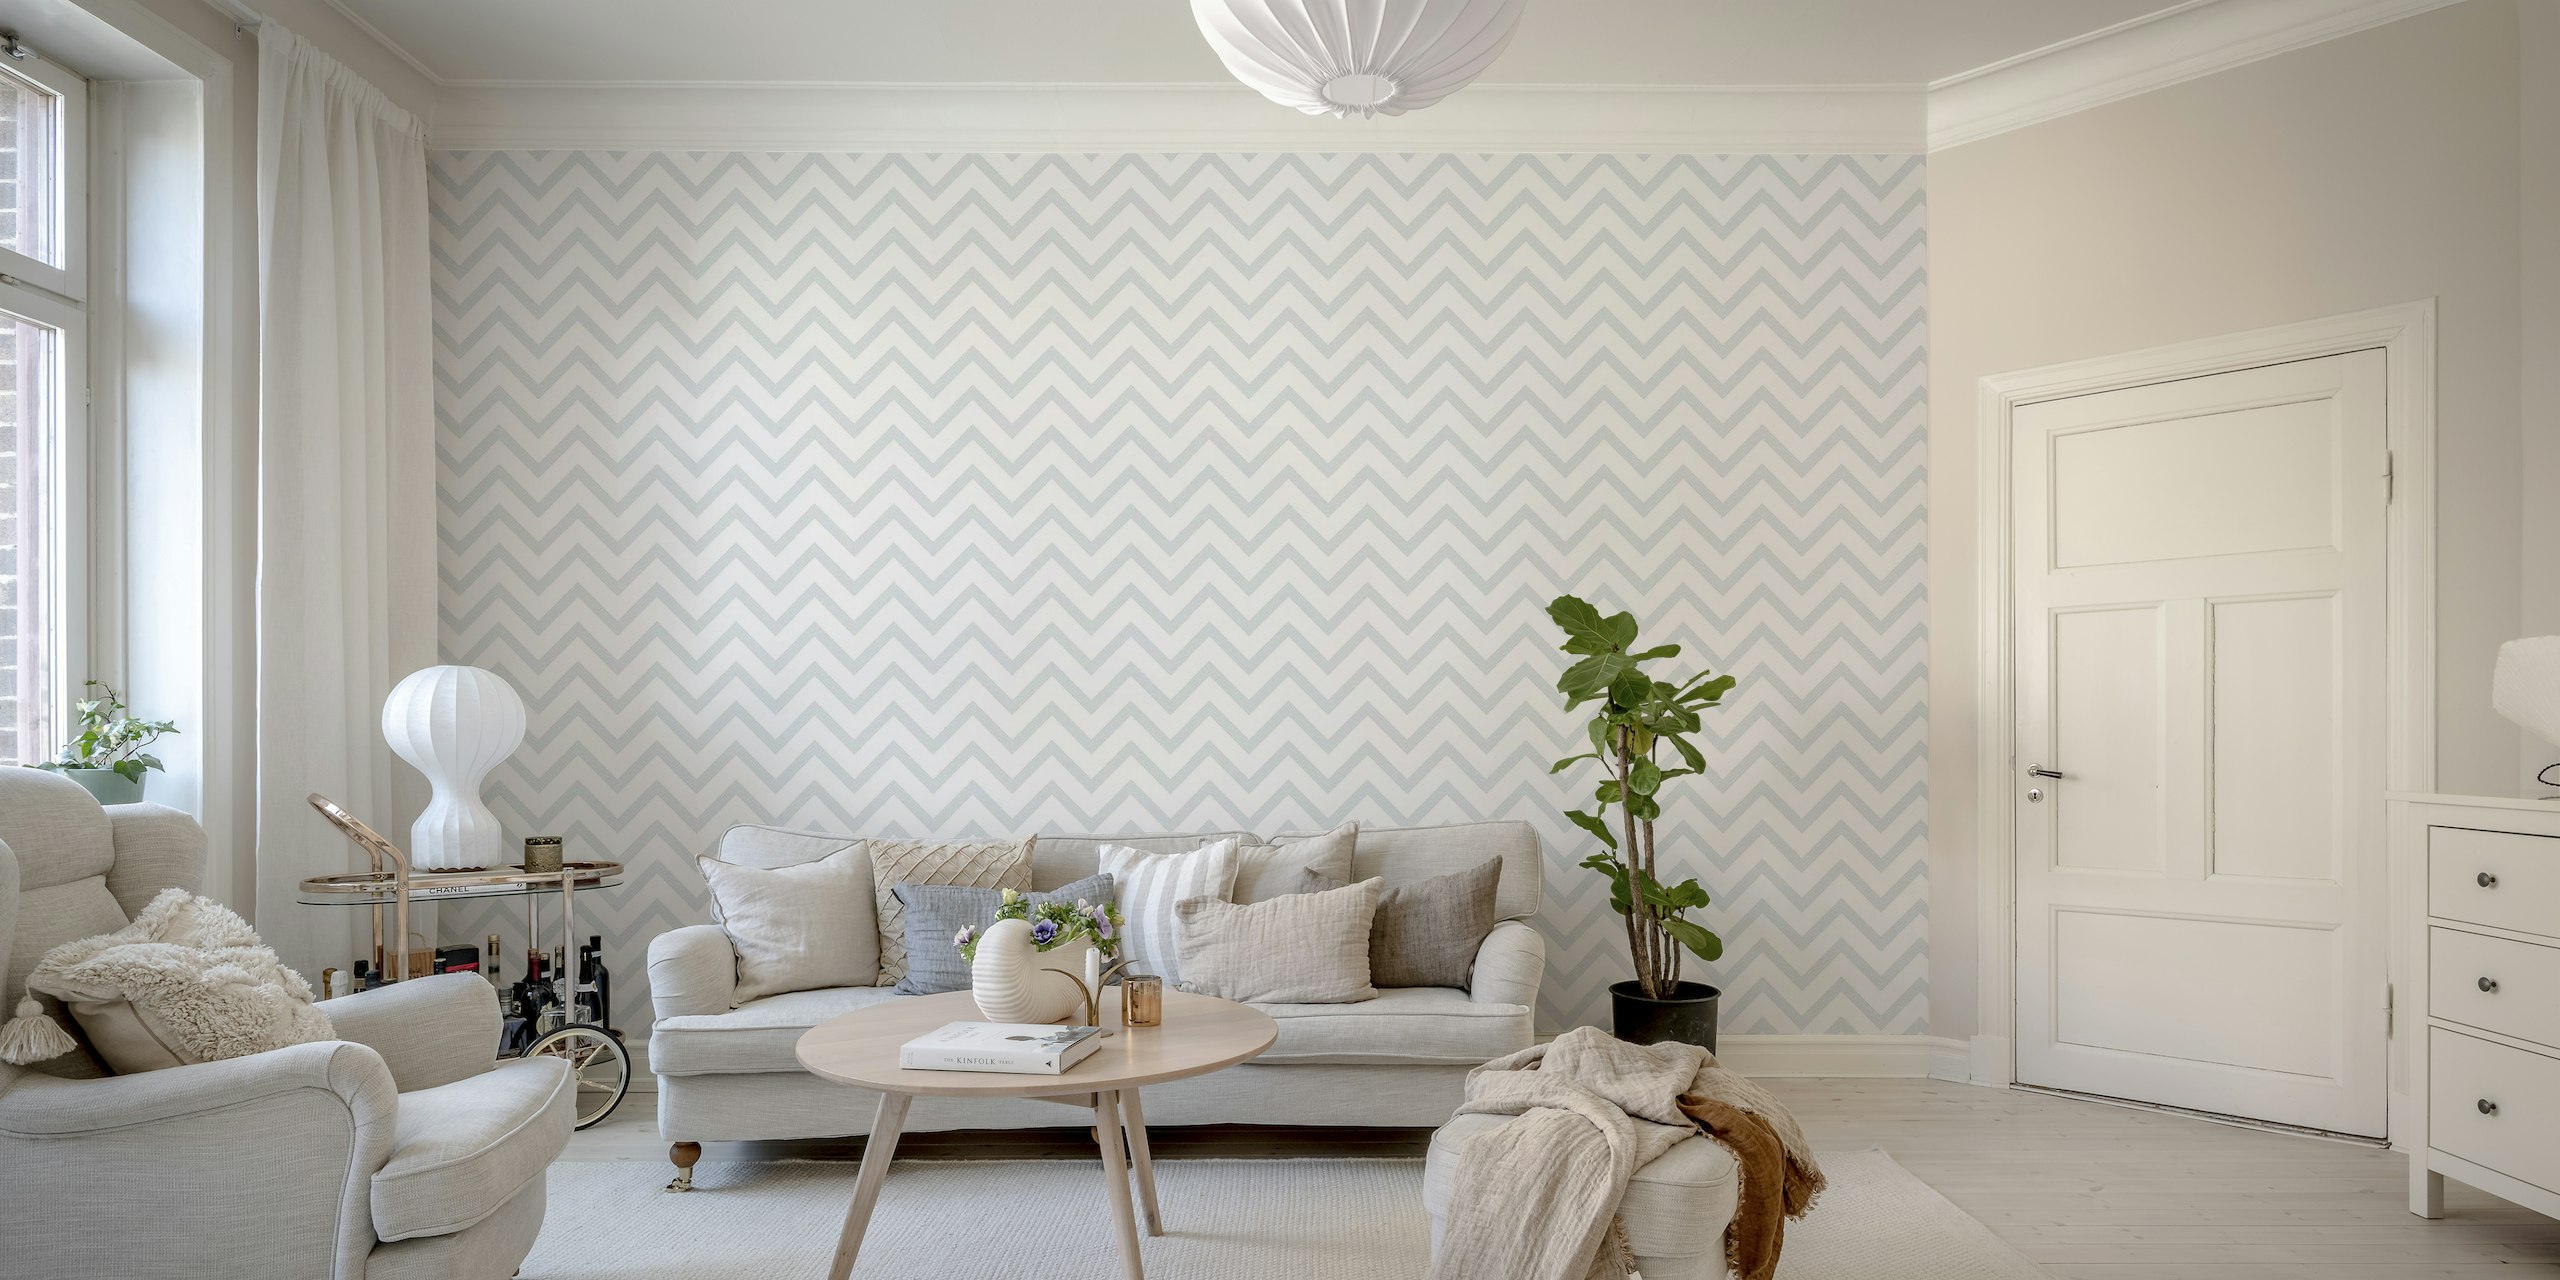 Elegante grijze chevron-patroon muurschildering voor een verfijnd interieur